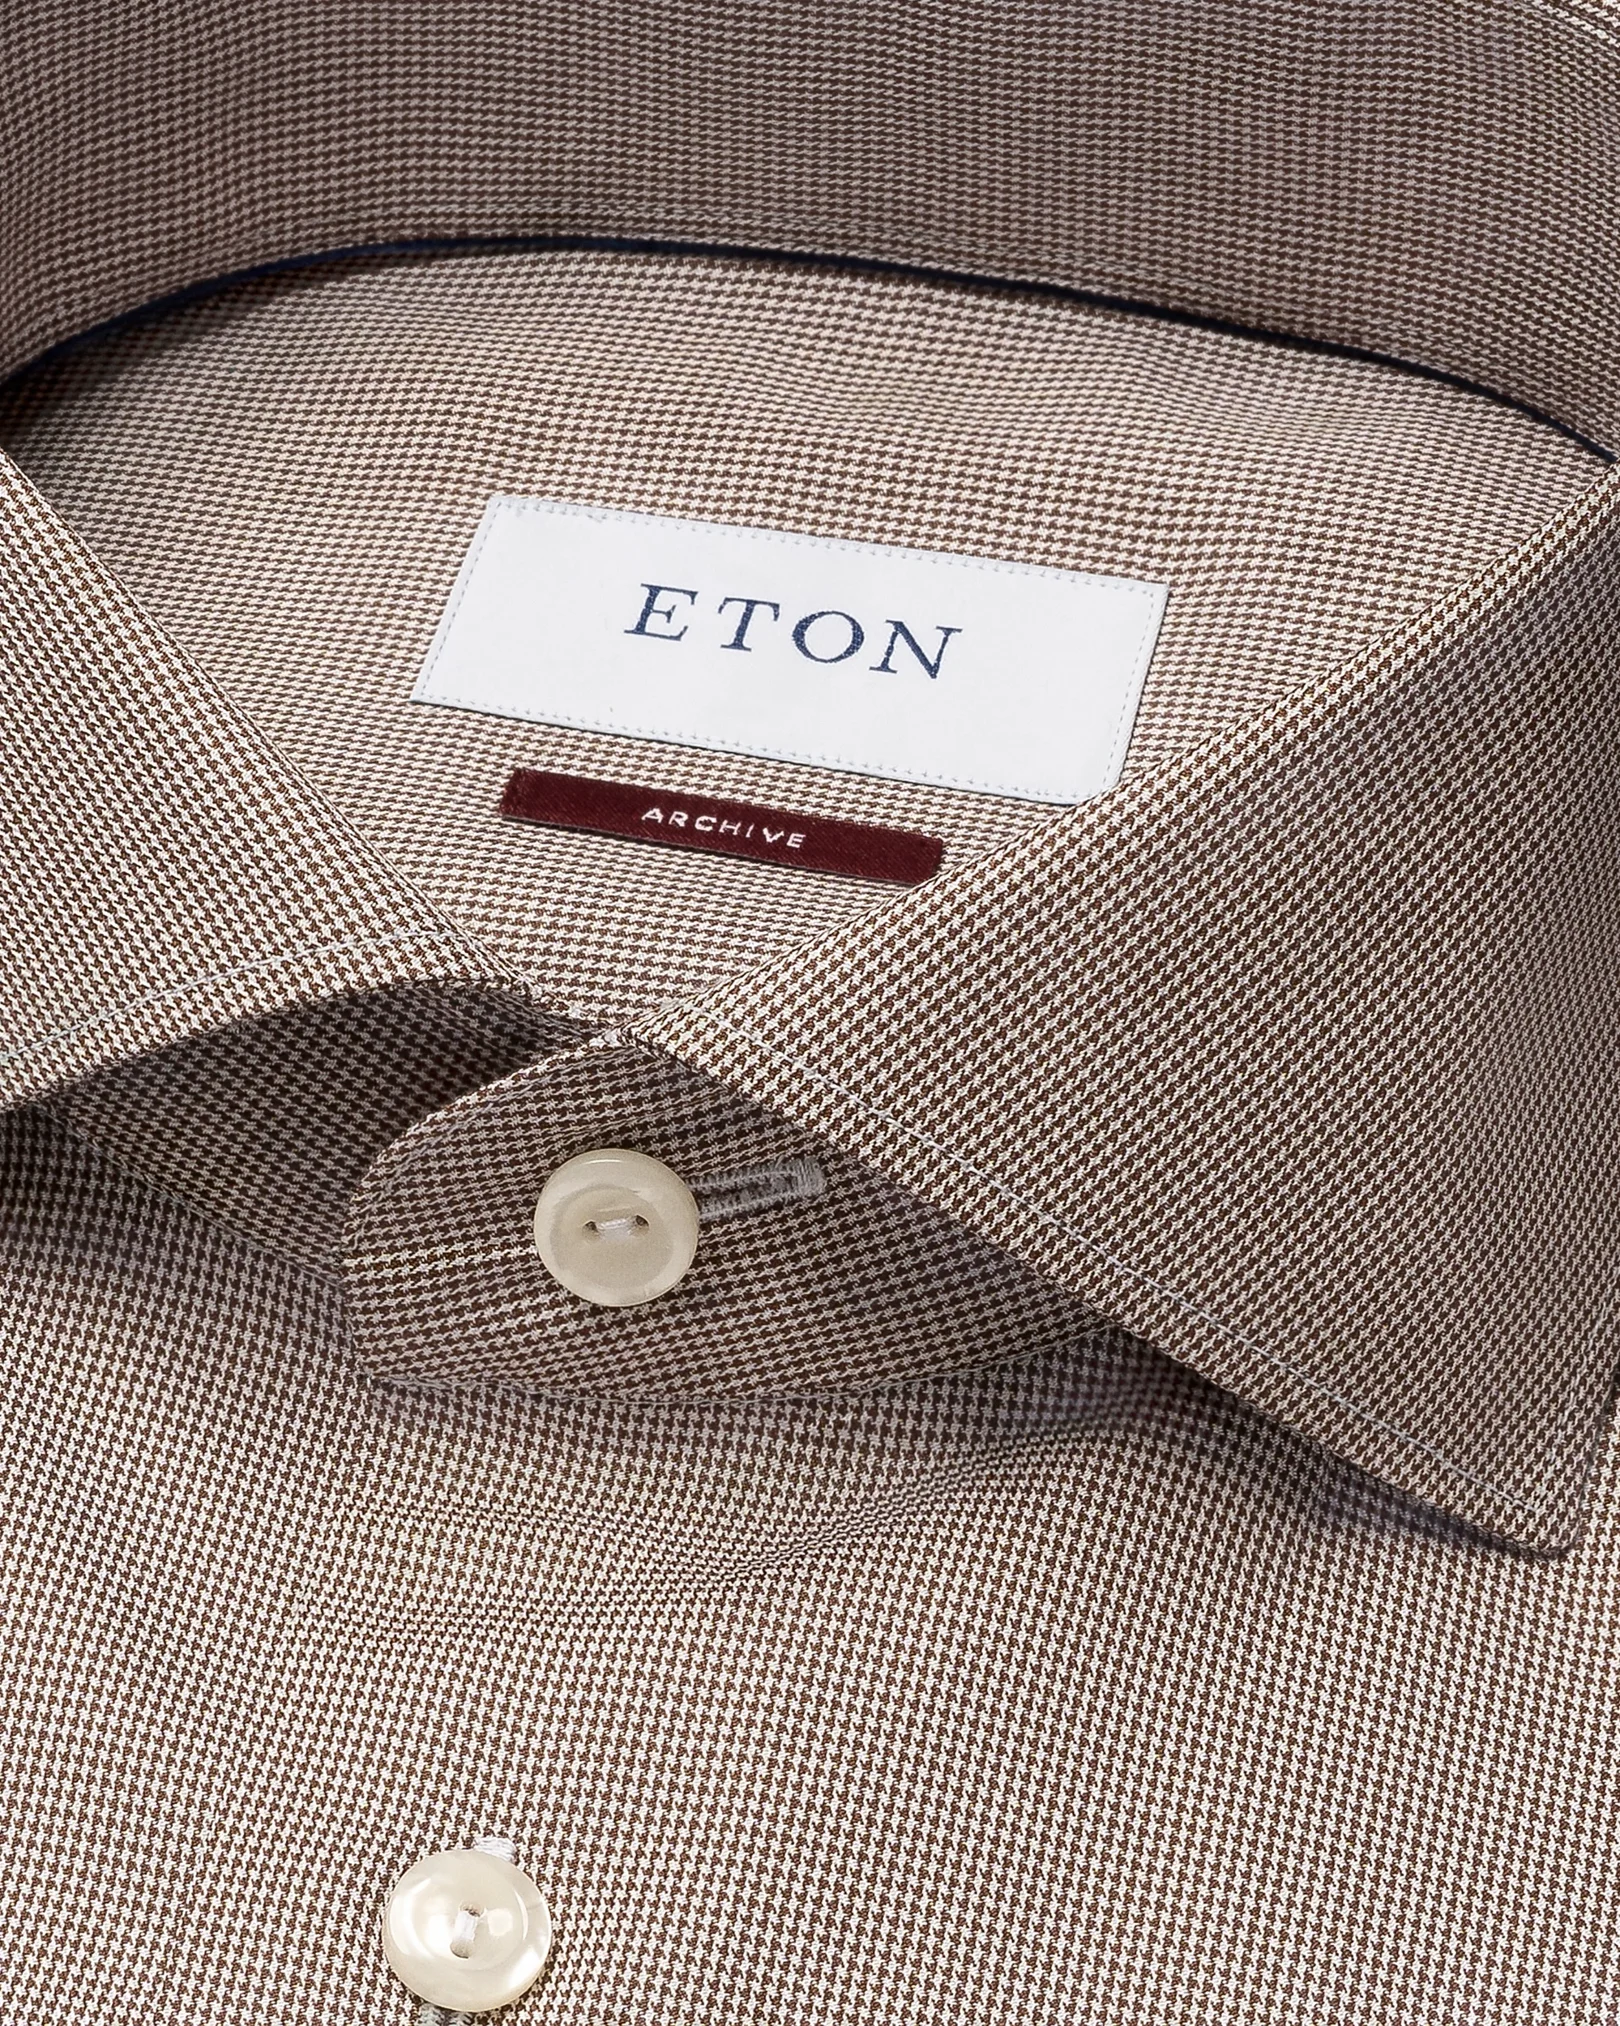 Eton - houndstooth fine twill shirt